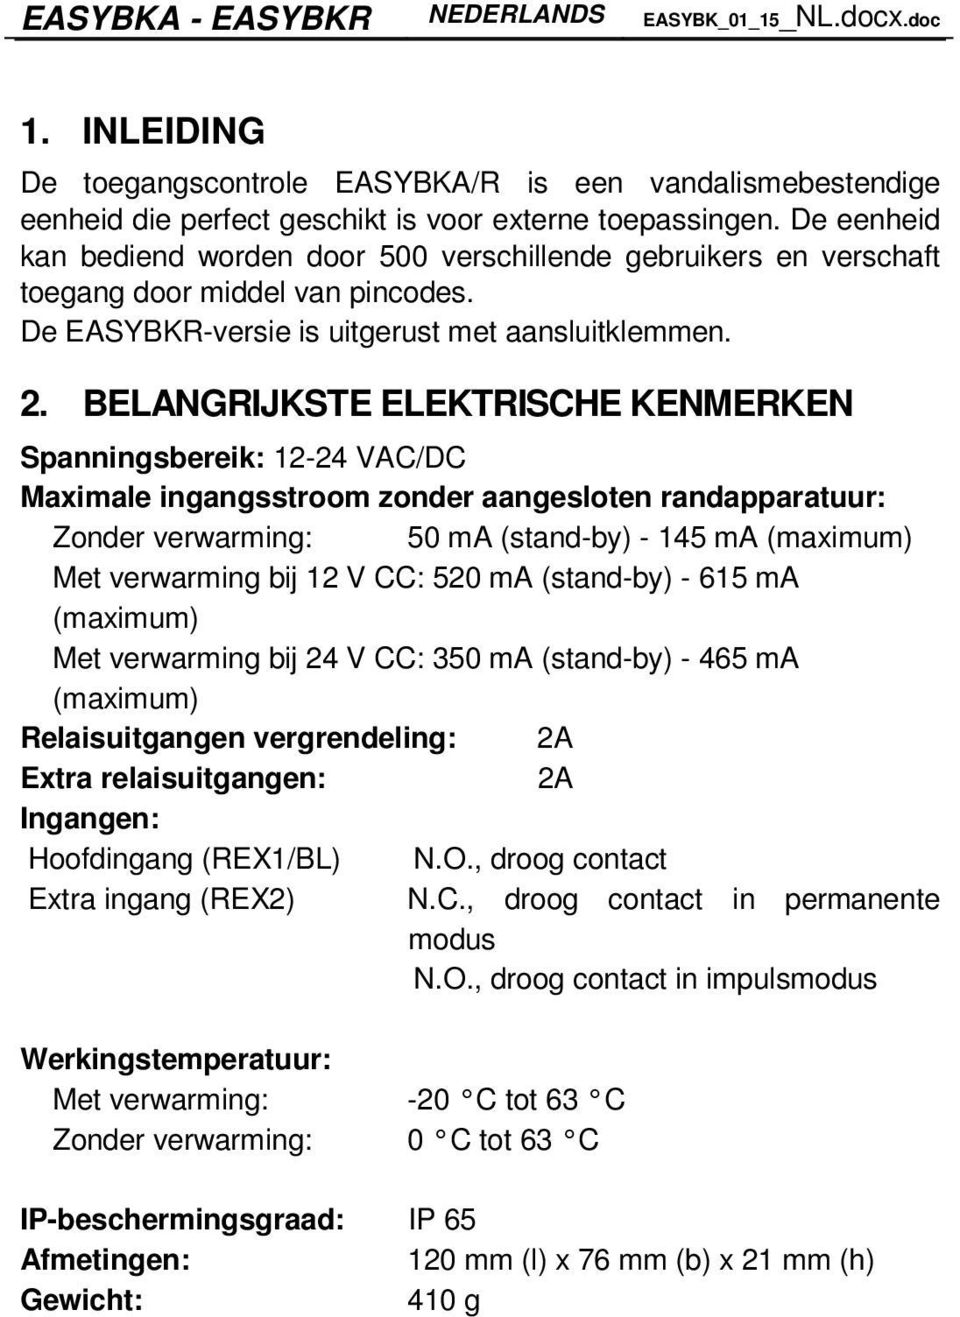 BELANGRIJKSTE ELEKTRISCHE KENMERKEN Spanningsbereik: 12-24 VAC/DC Maximale ingangsstroom zonder aangesloten randapparatuur: Zonder verwarming: 50 ma (stand-by) - 145 ma (maximum) Met verwarming bij